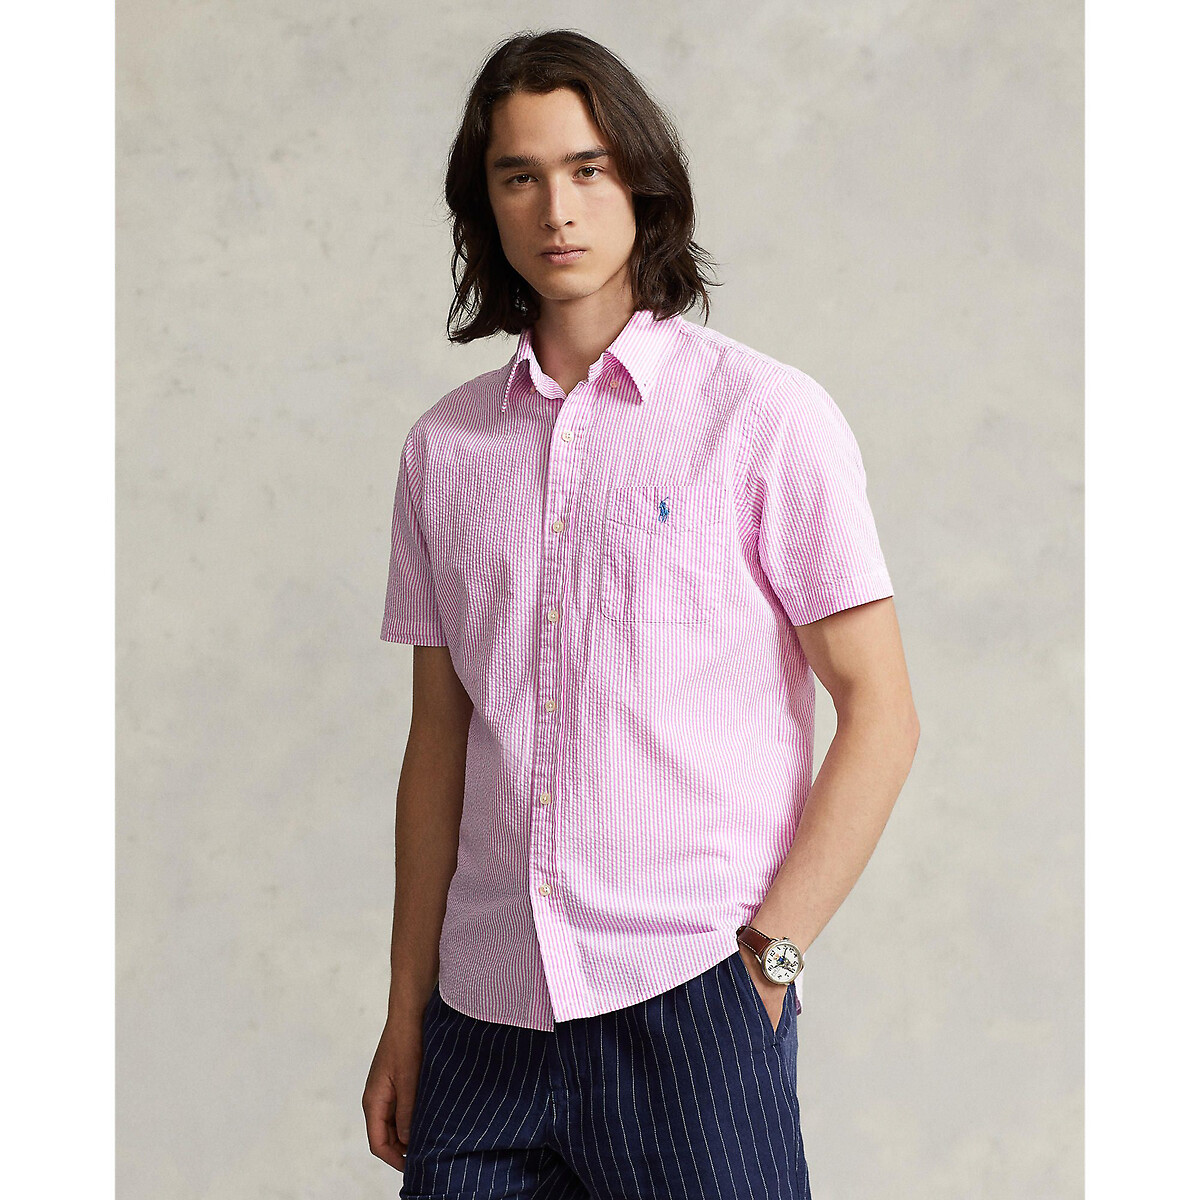 Рубашка Из легкой полосатой ткани с вышитым логотипом L розовый